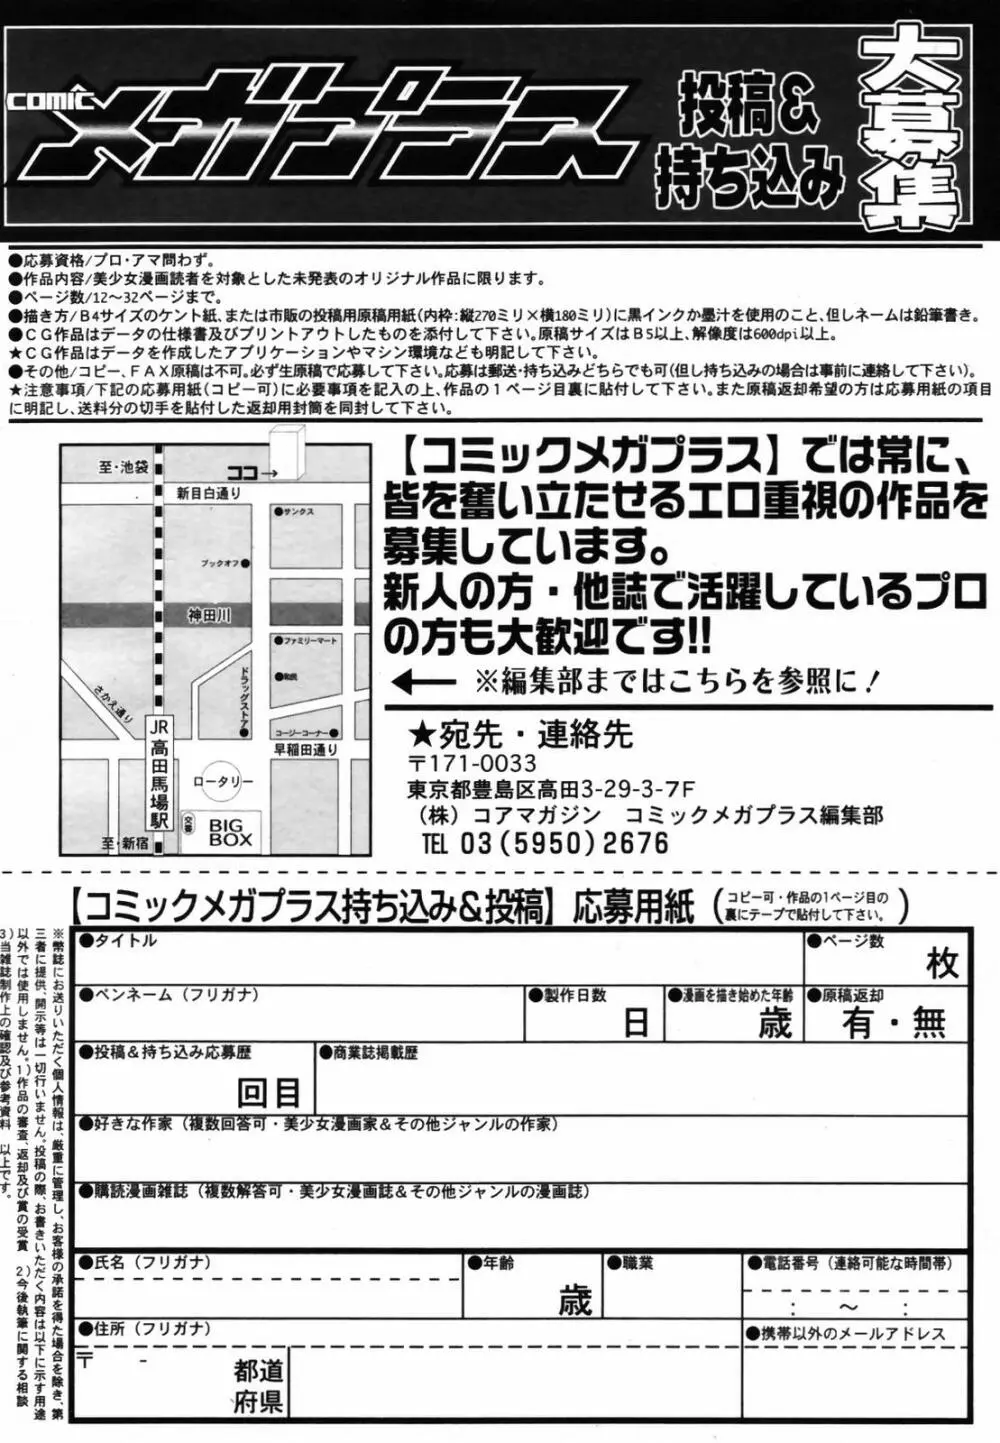 COMIC メガプラス Vol.46 2007年8月号 336ページ